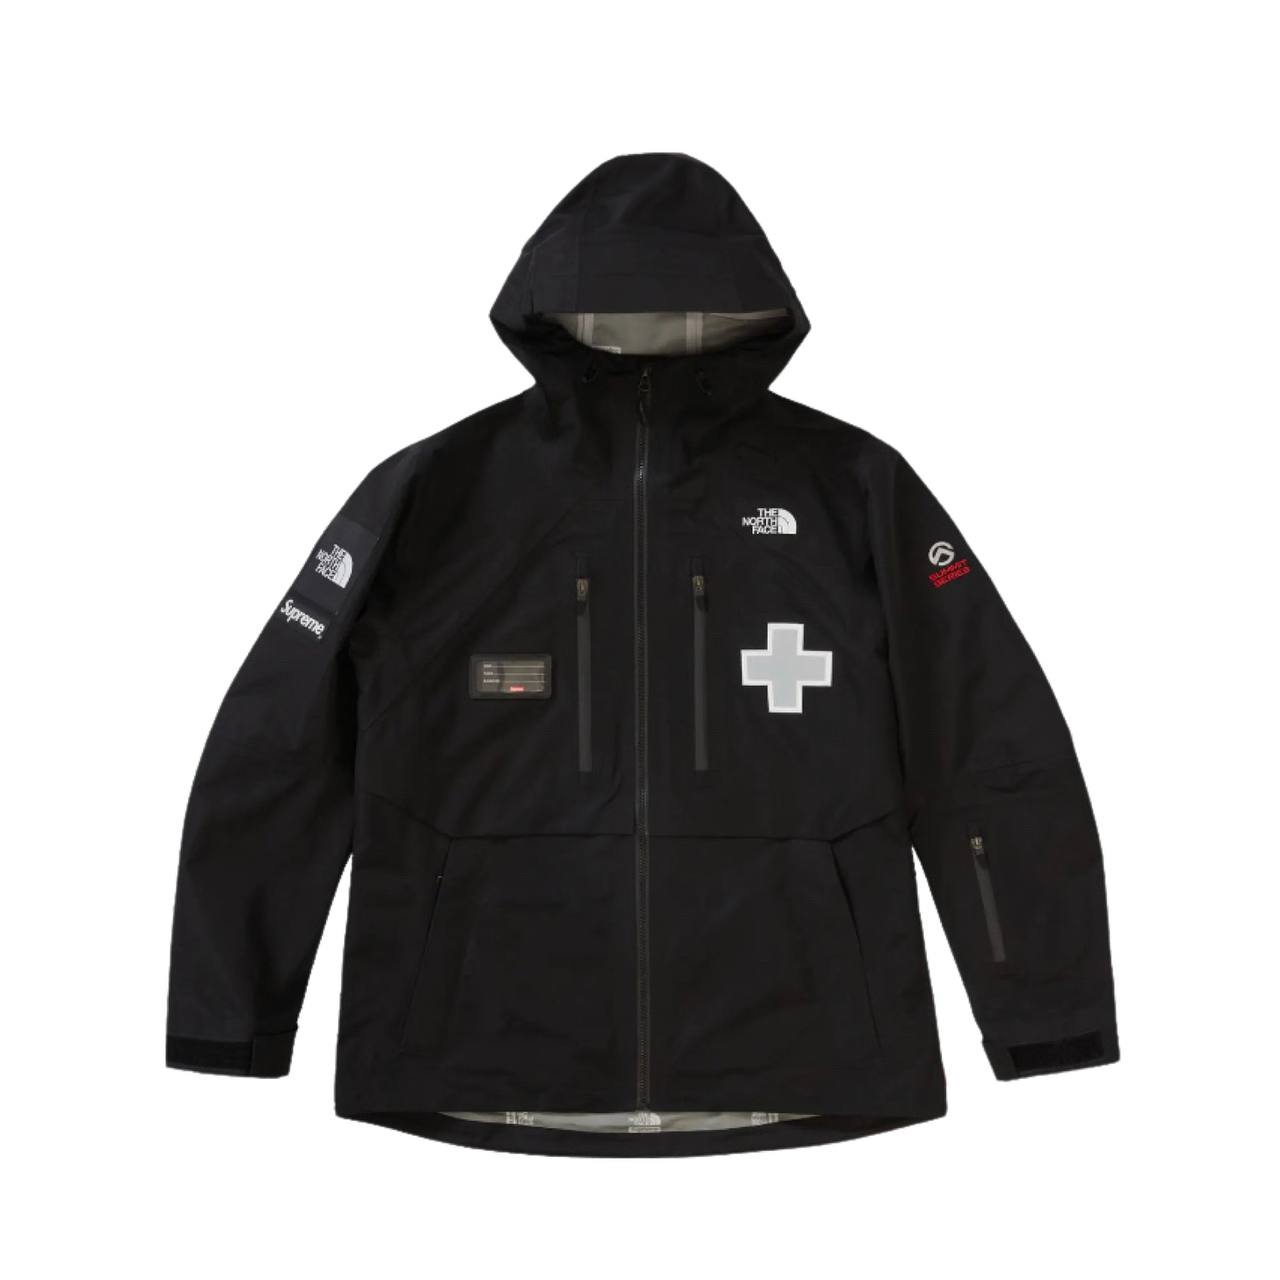 Supreme North Face Jacket